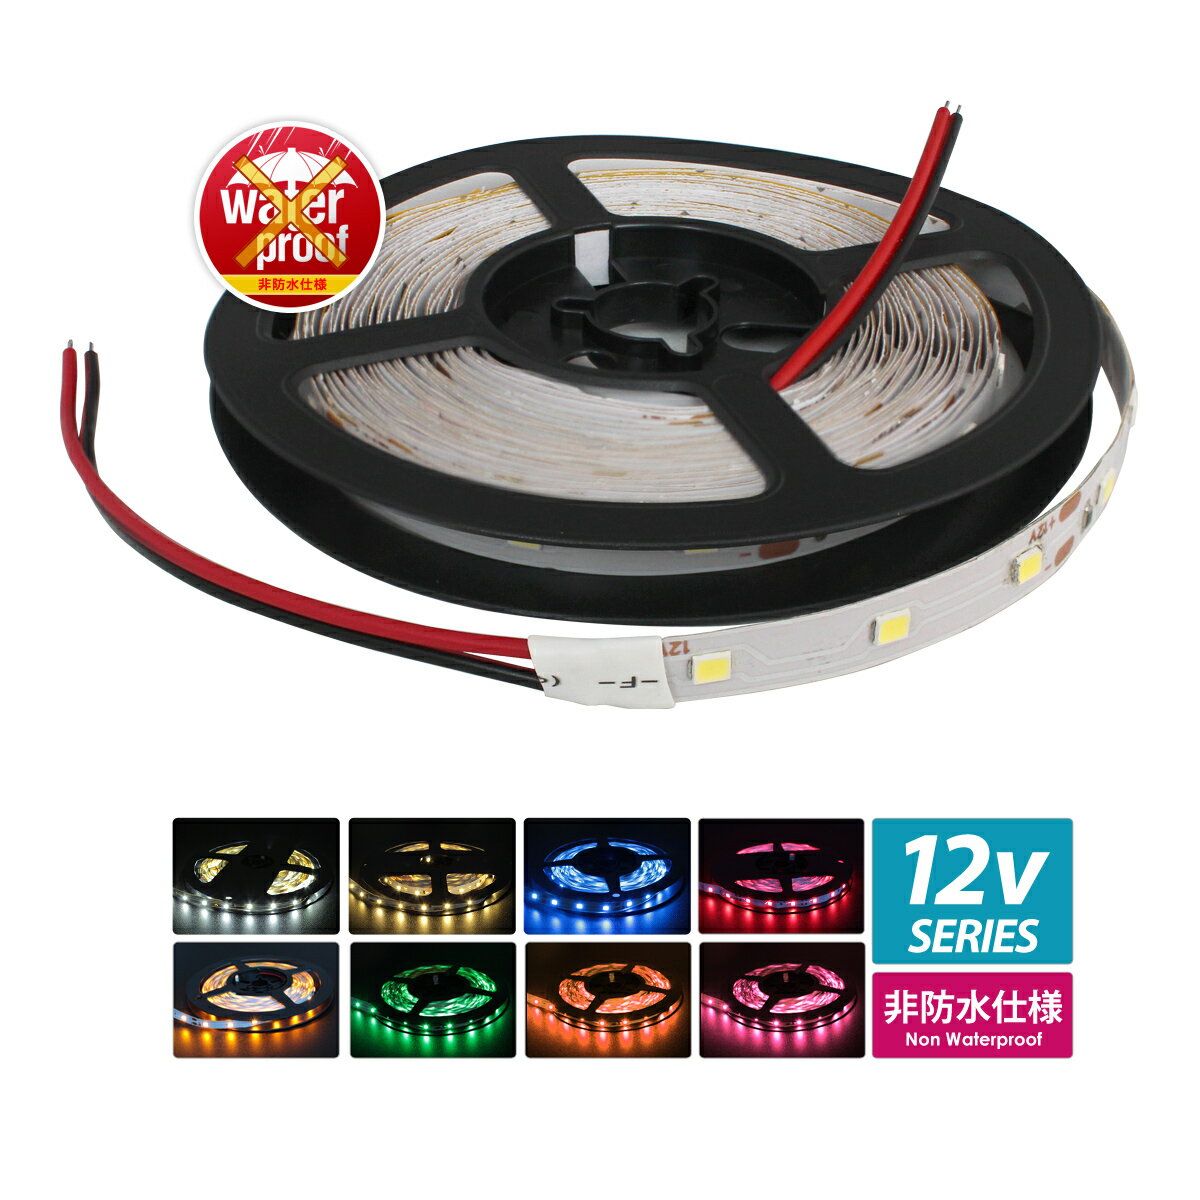 【1個】LED テープライト 12V 5m 非防水 間接照明 棚下照明 看板照明 両面テープ ライトアップ 300LED SMD3528 両端子 イルミネーション